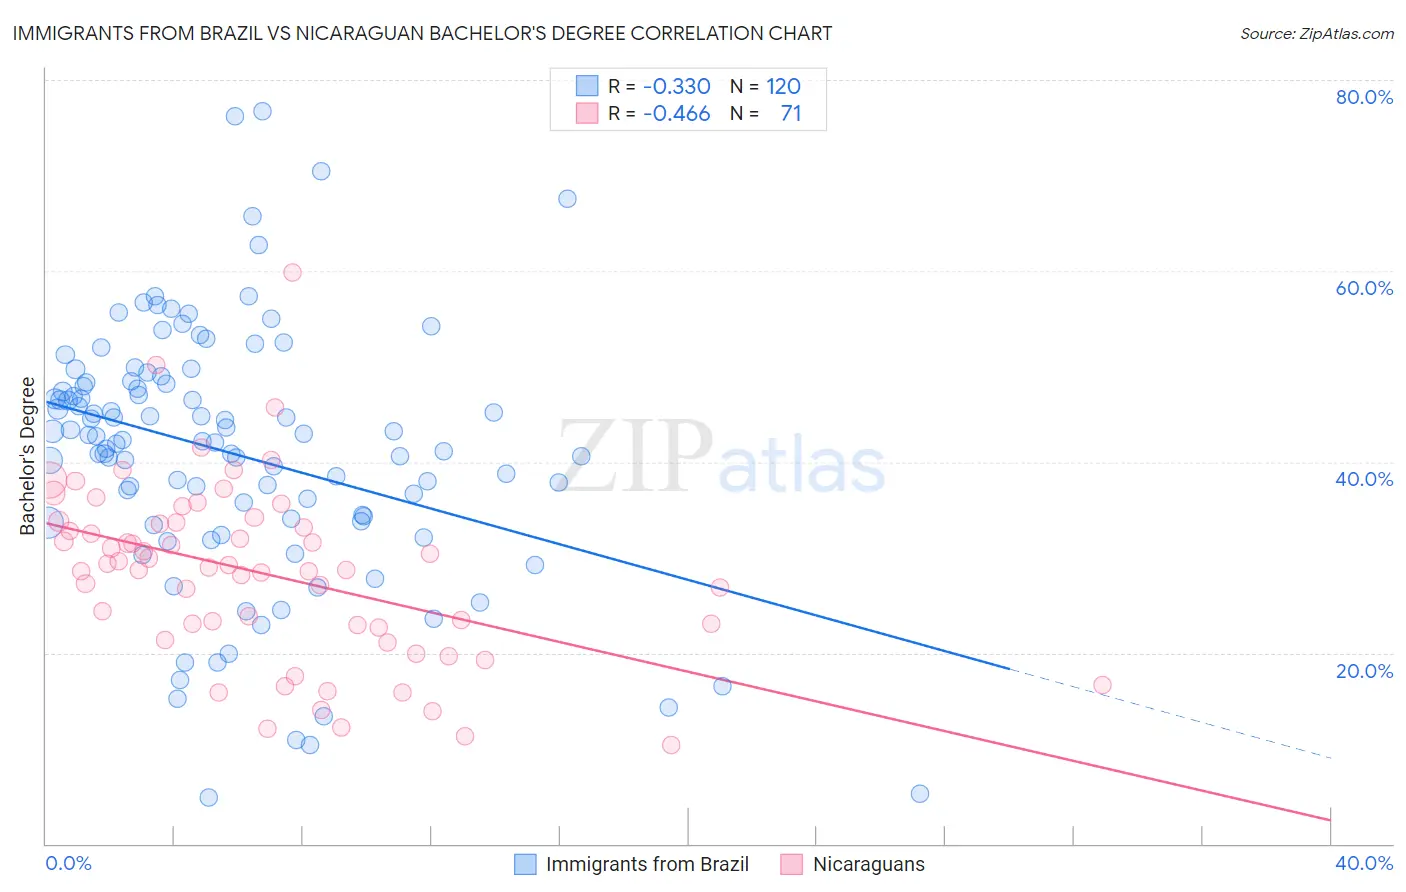 Immigrants from Brazil vs Nicaraguan Bachelor's Degree